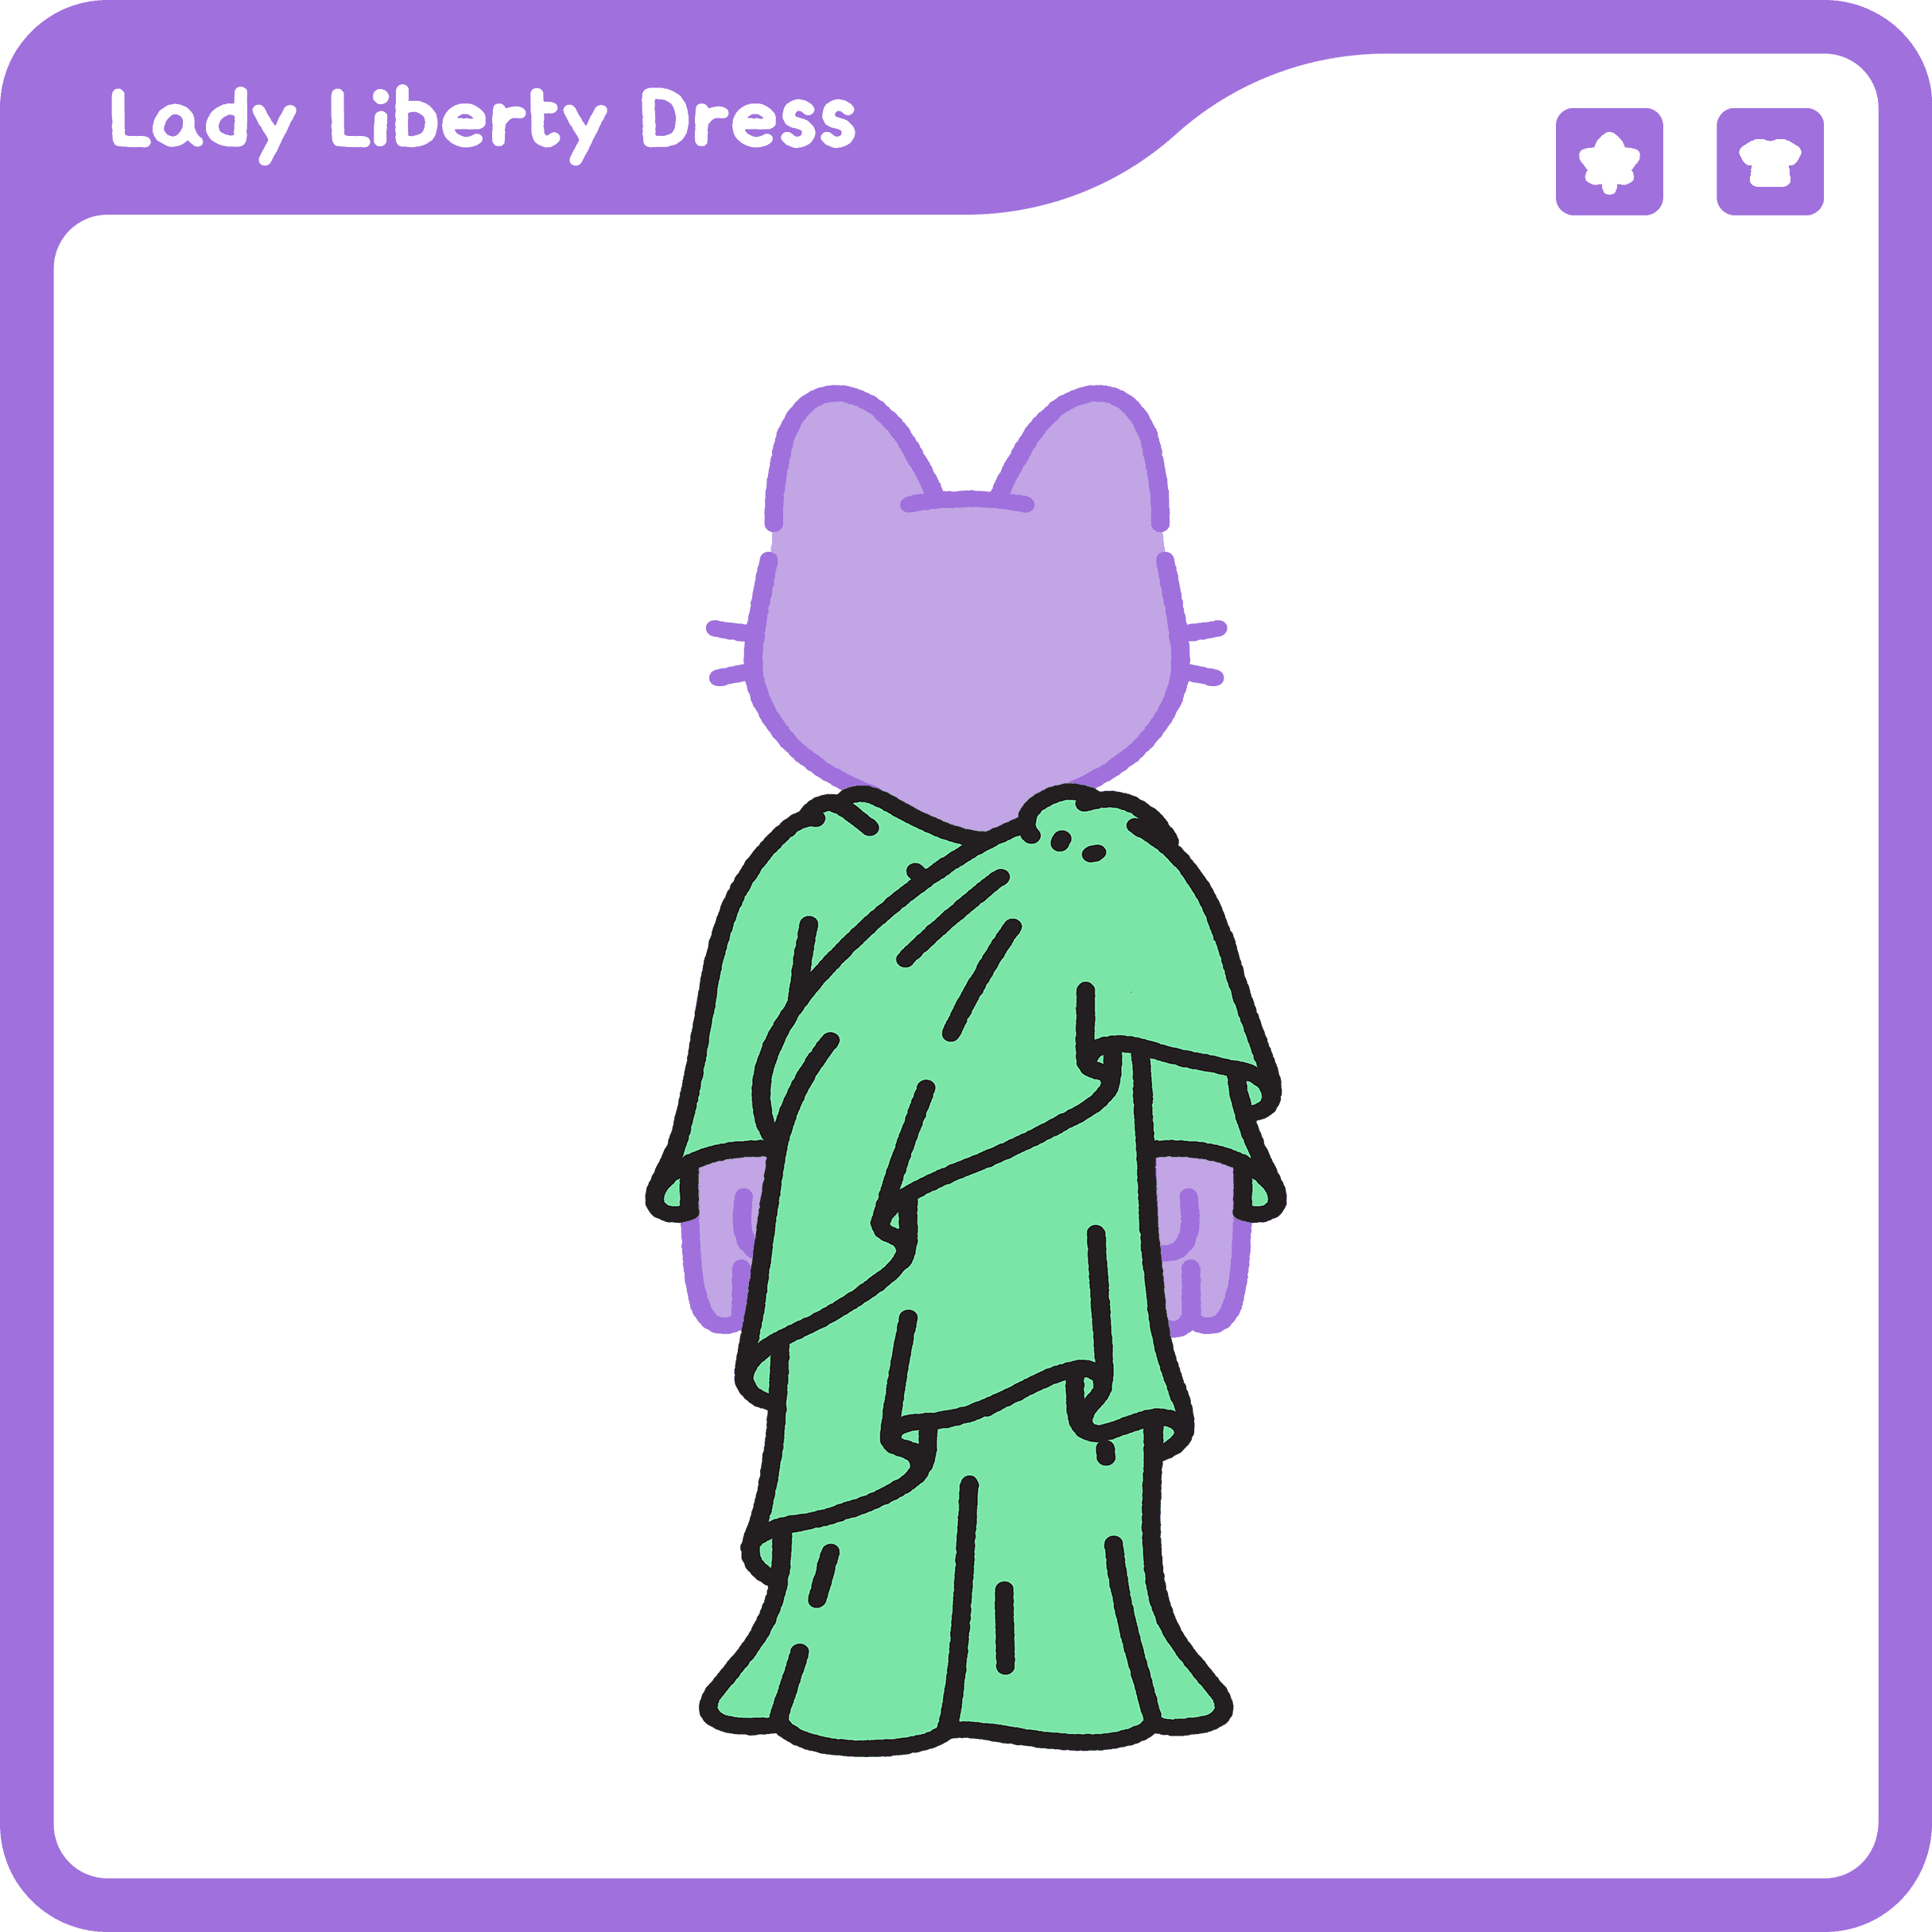 Lady Liberty Dress